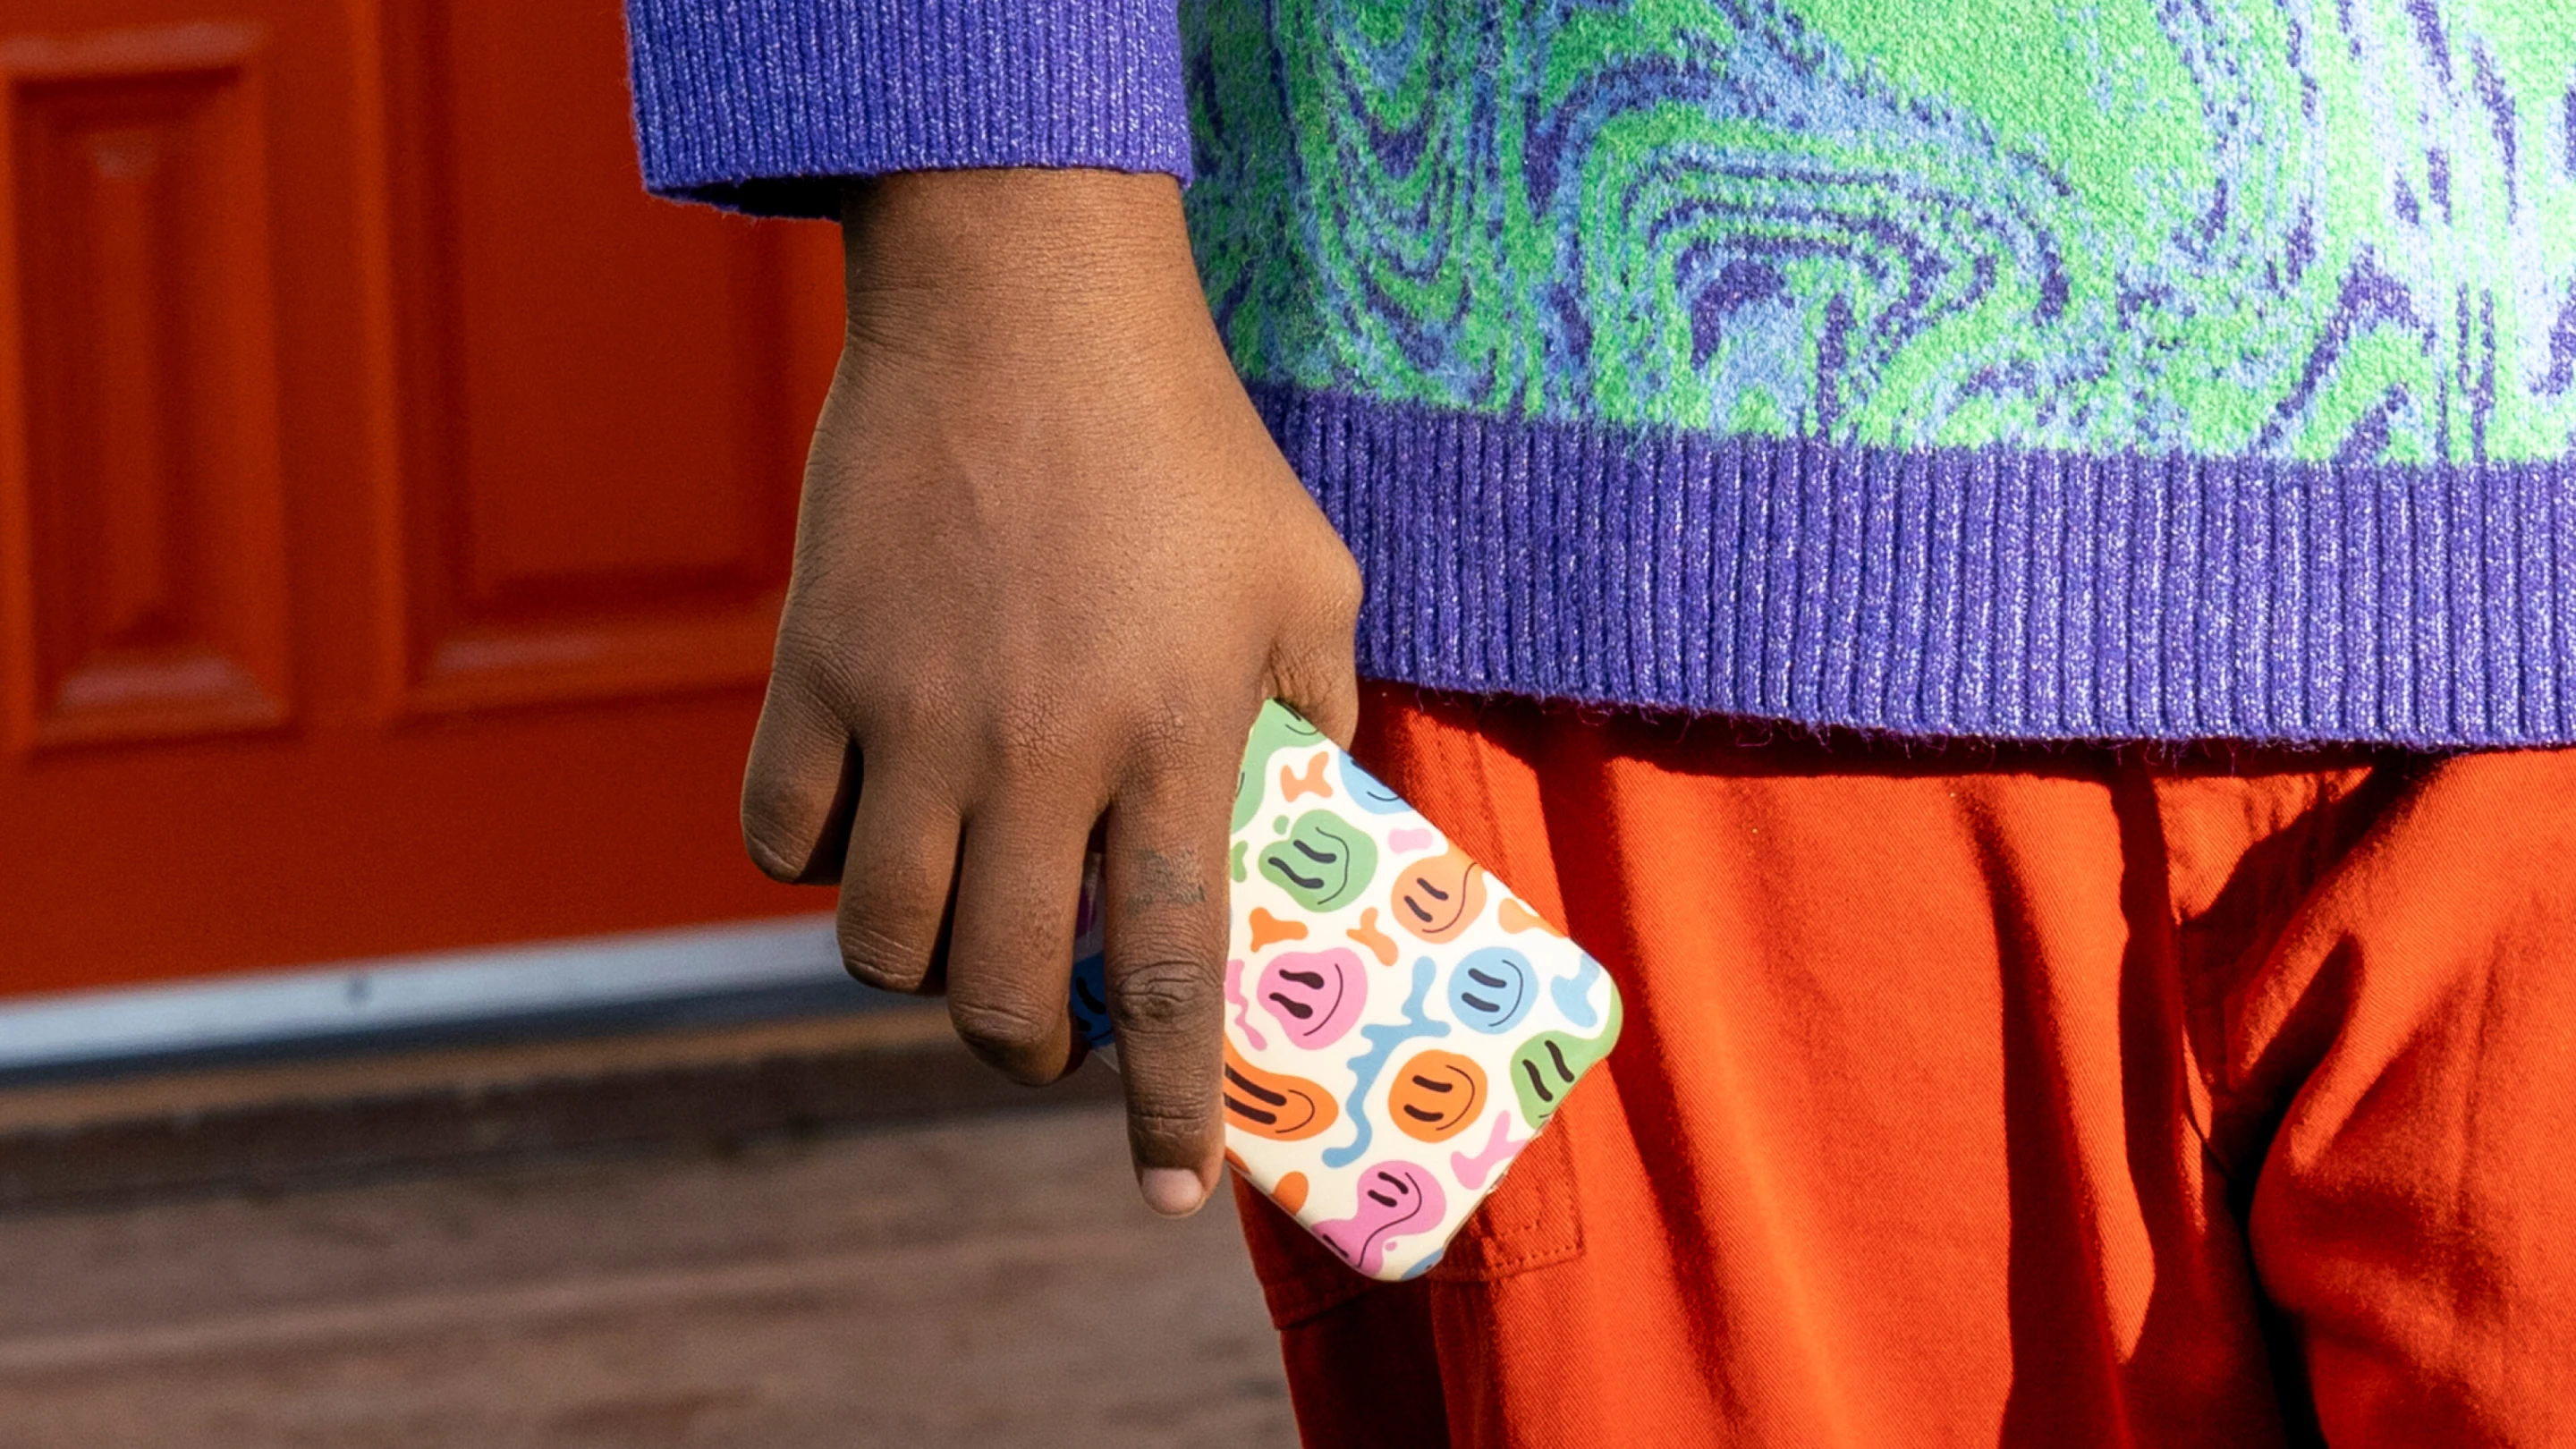 カラフルなセーターを着た人が手に携帯電話を持っています。携帯電話のケースには虹色のスマイリーフェイスが描かれています。